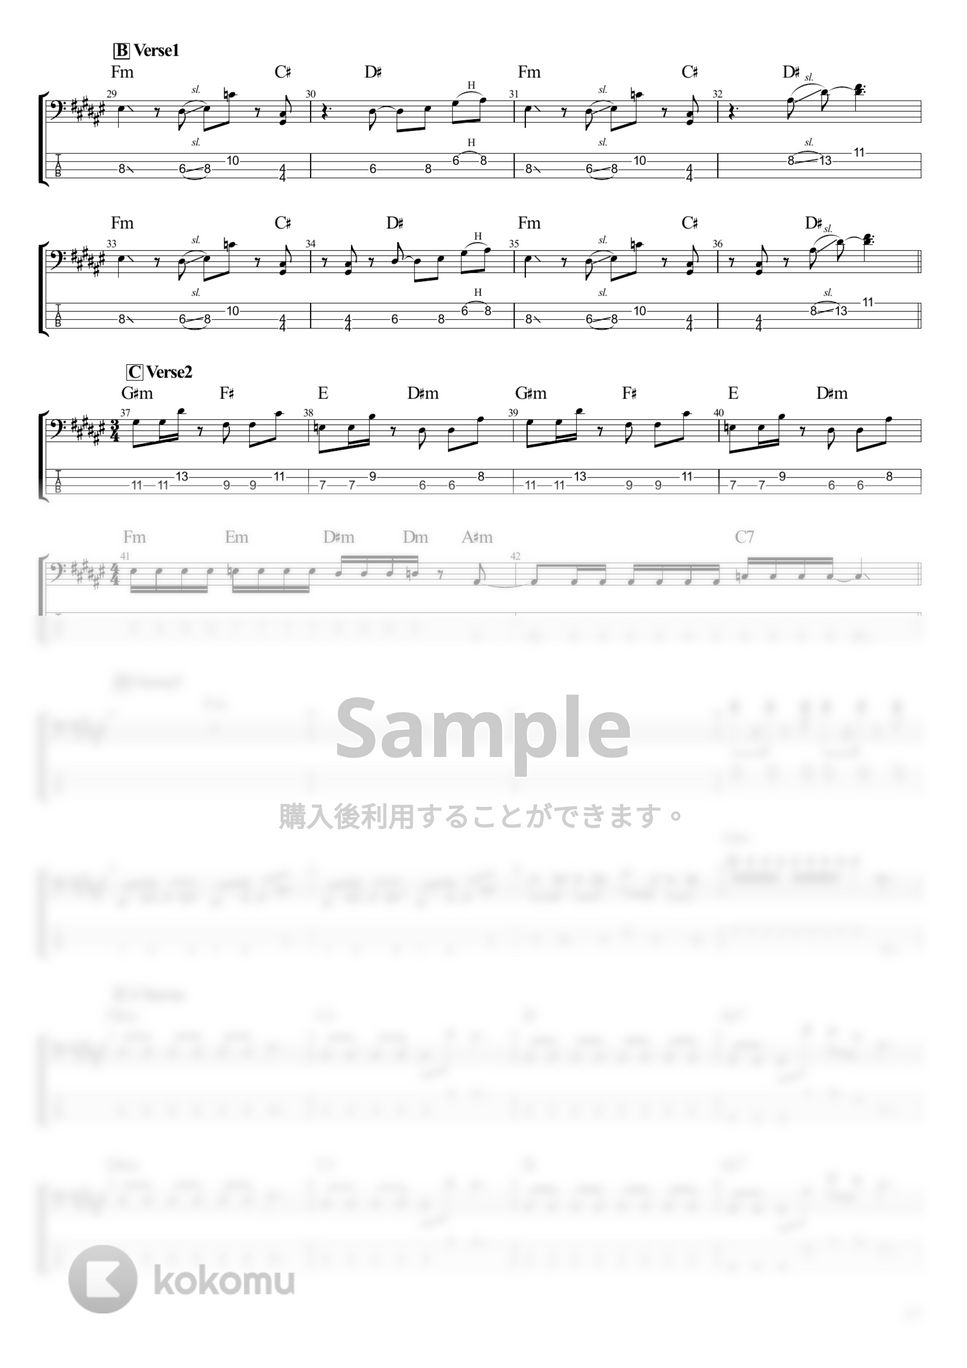 凛として時雨 - アレキシサイミアスペア (ベース Tab譜 4弦) by T's bass score